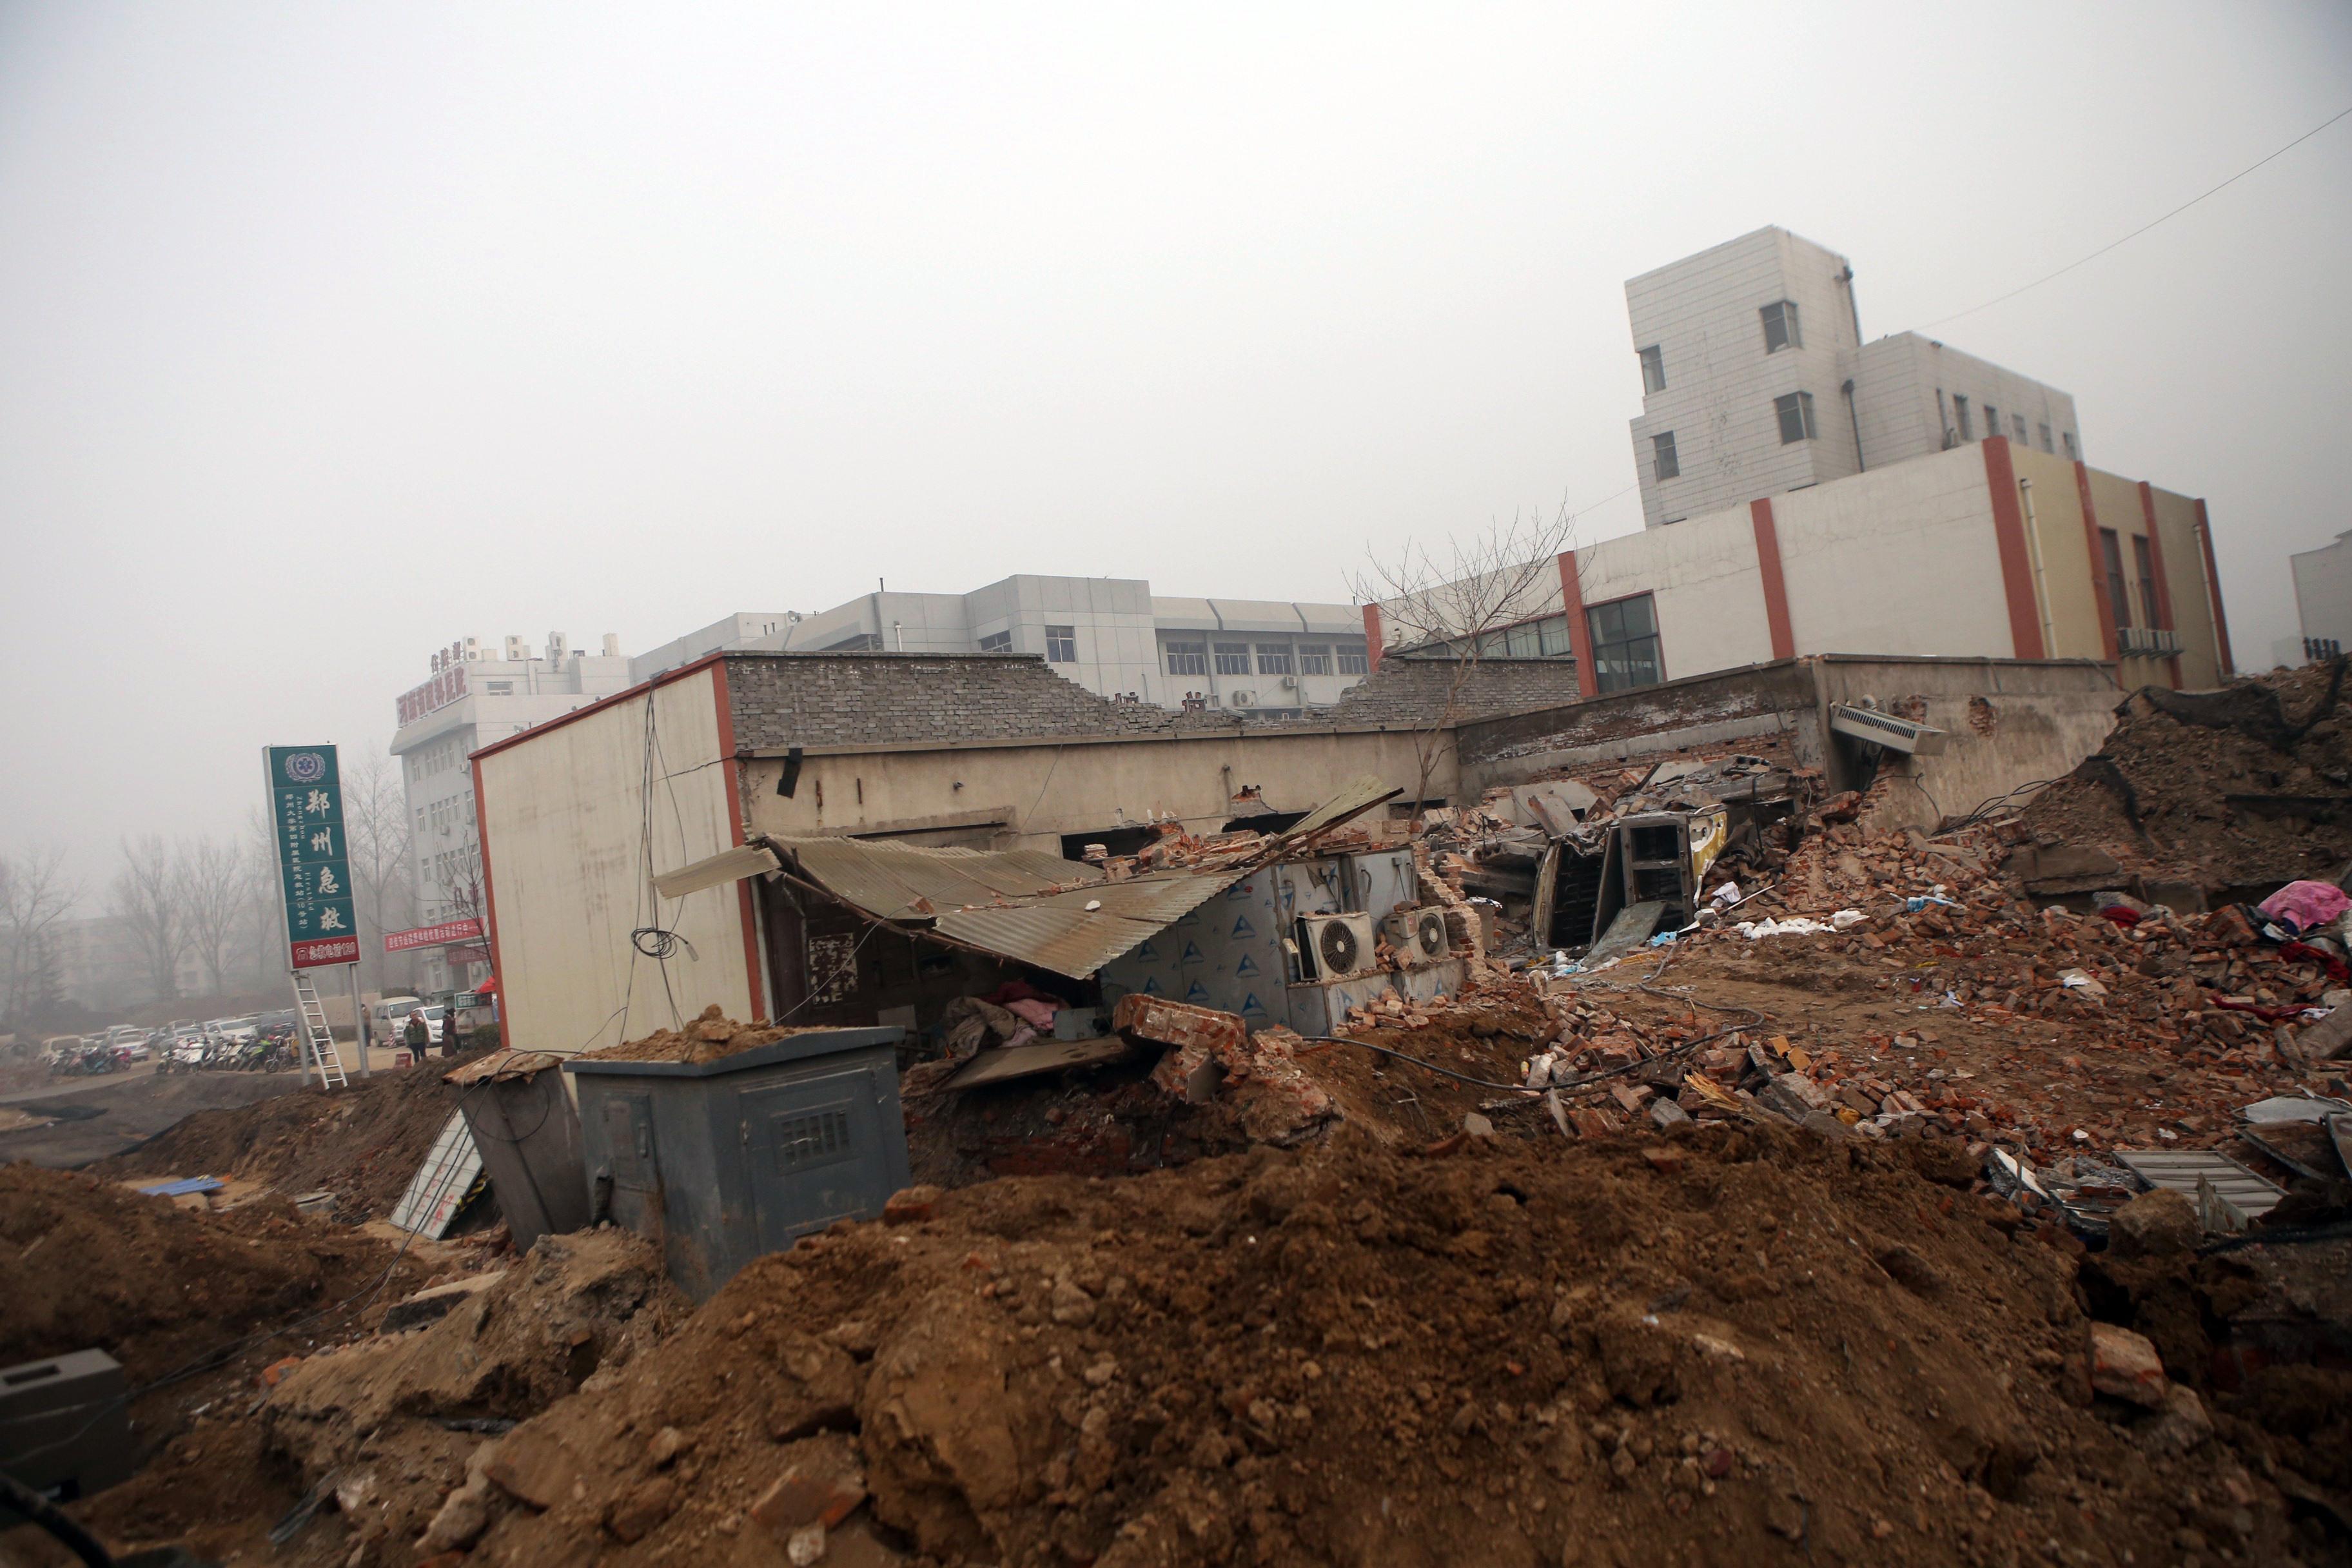 Den 7 januari började ett arbetslag riva Zhengzhous fjärde universitetssjukhus, medan verksamheten fortfarande pågick. Bilden visar sjukhuset delvis rivet, dagen efter incidenten. (Foto: STR/AFP/Getty Images)